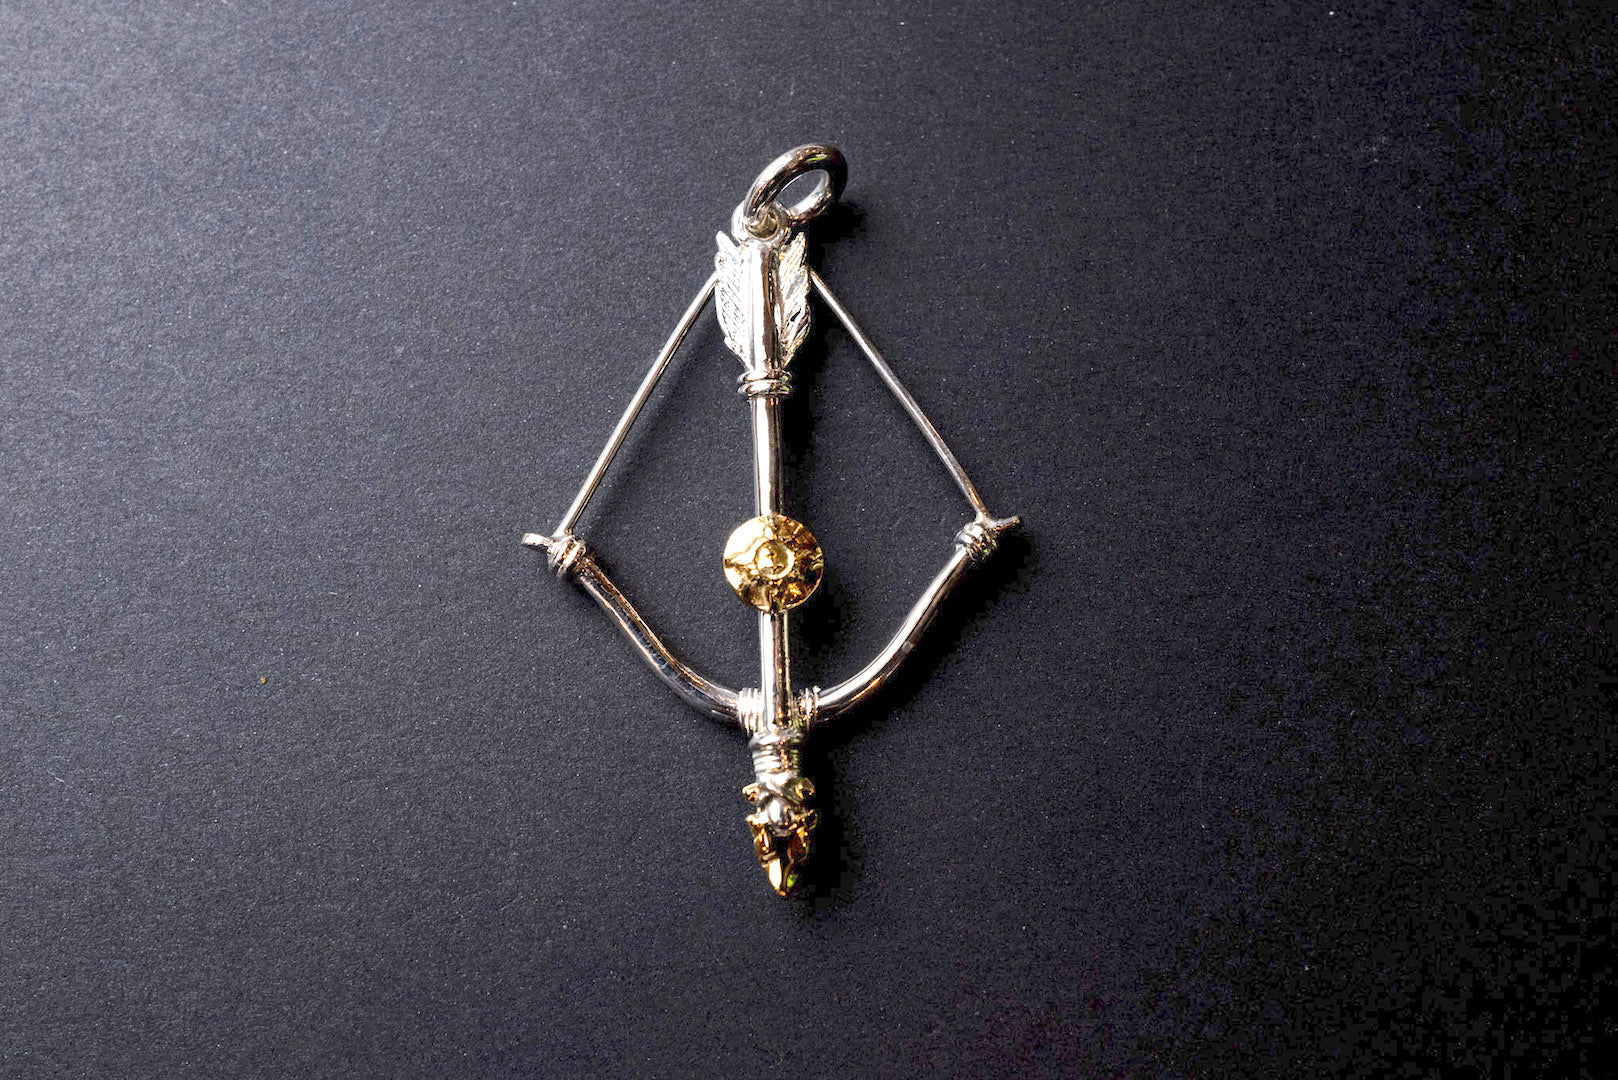 First Arrow's Size Medium "Bow & Arrow" Pendant K18 Gold Emblem & 18K Gold Arrowhead (P-216)